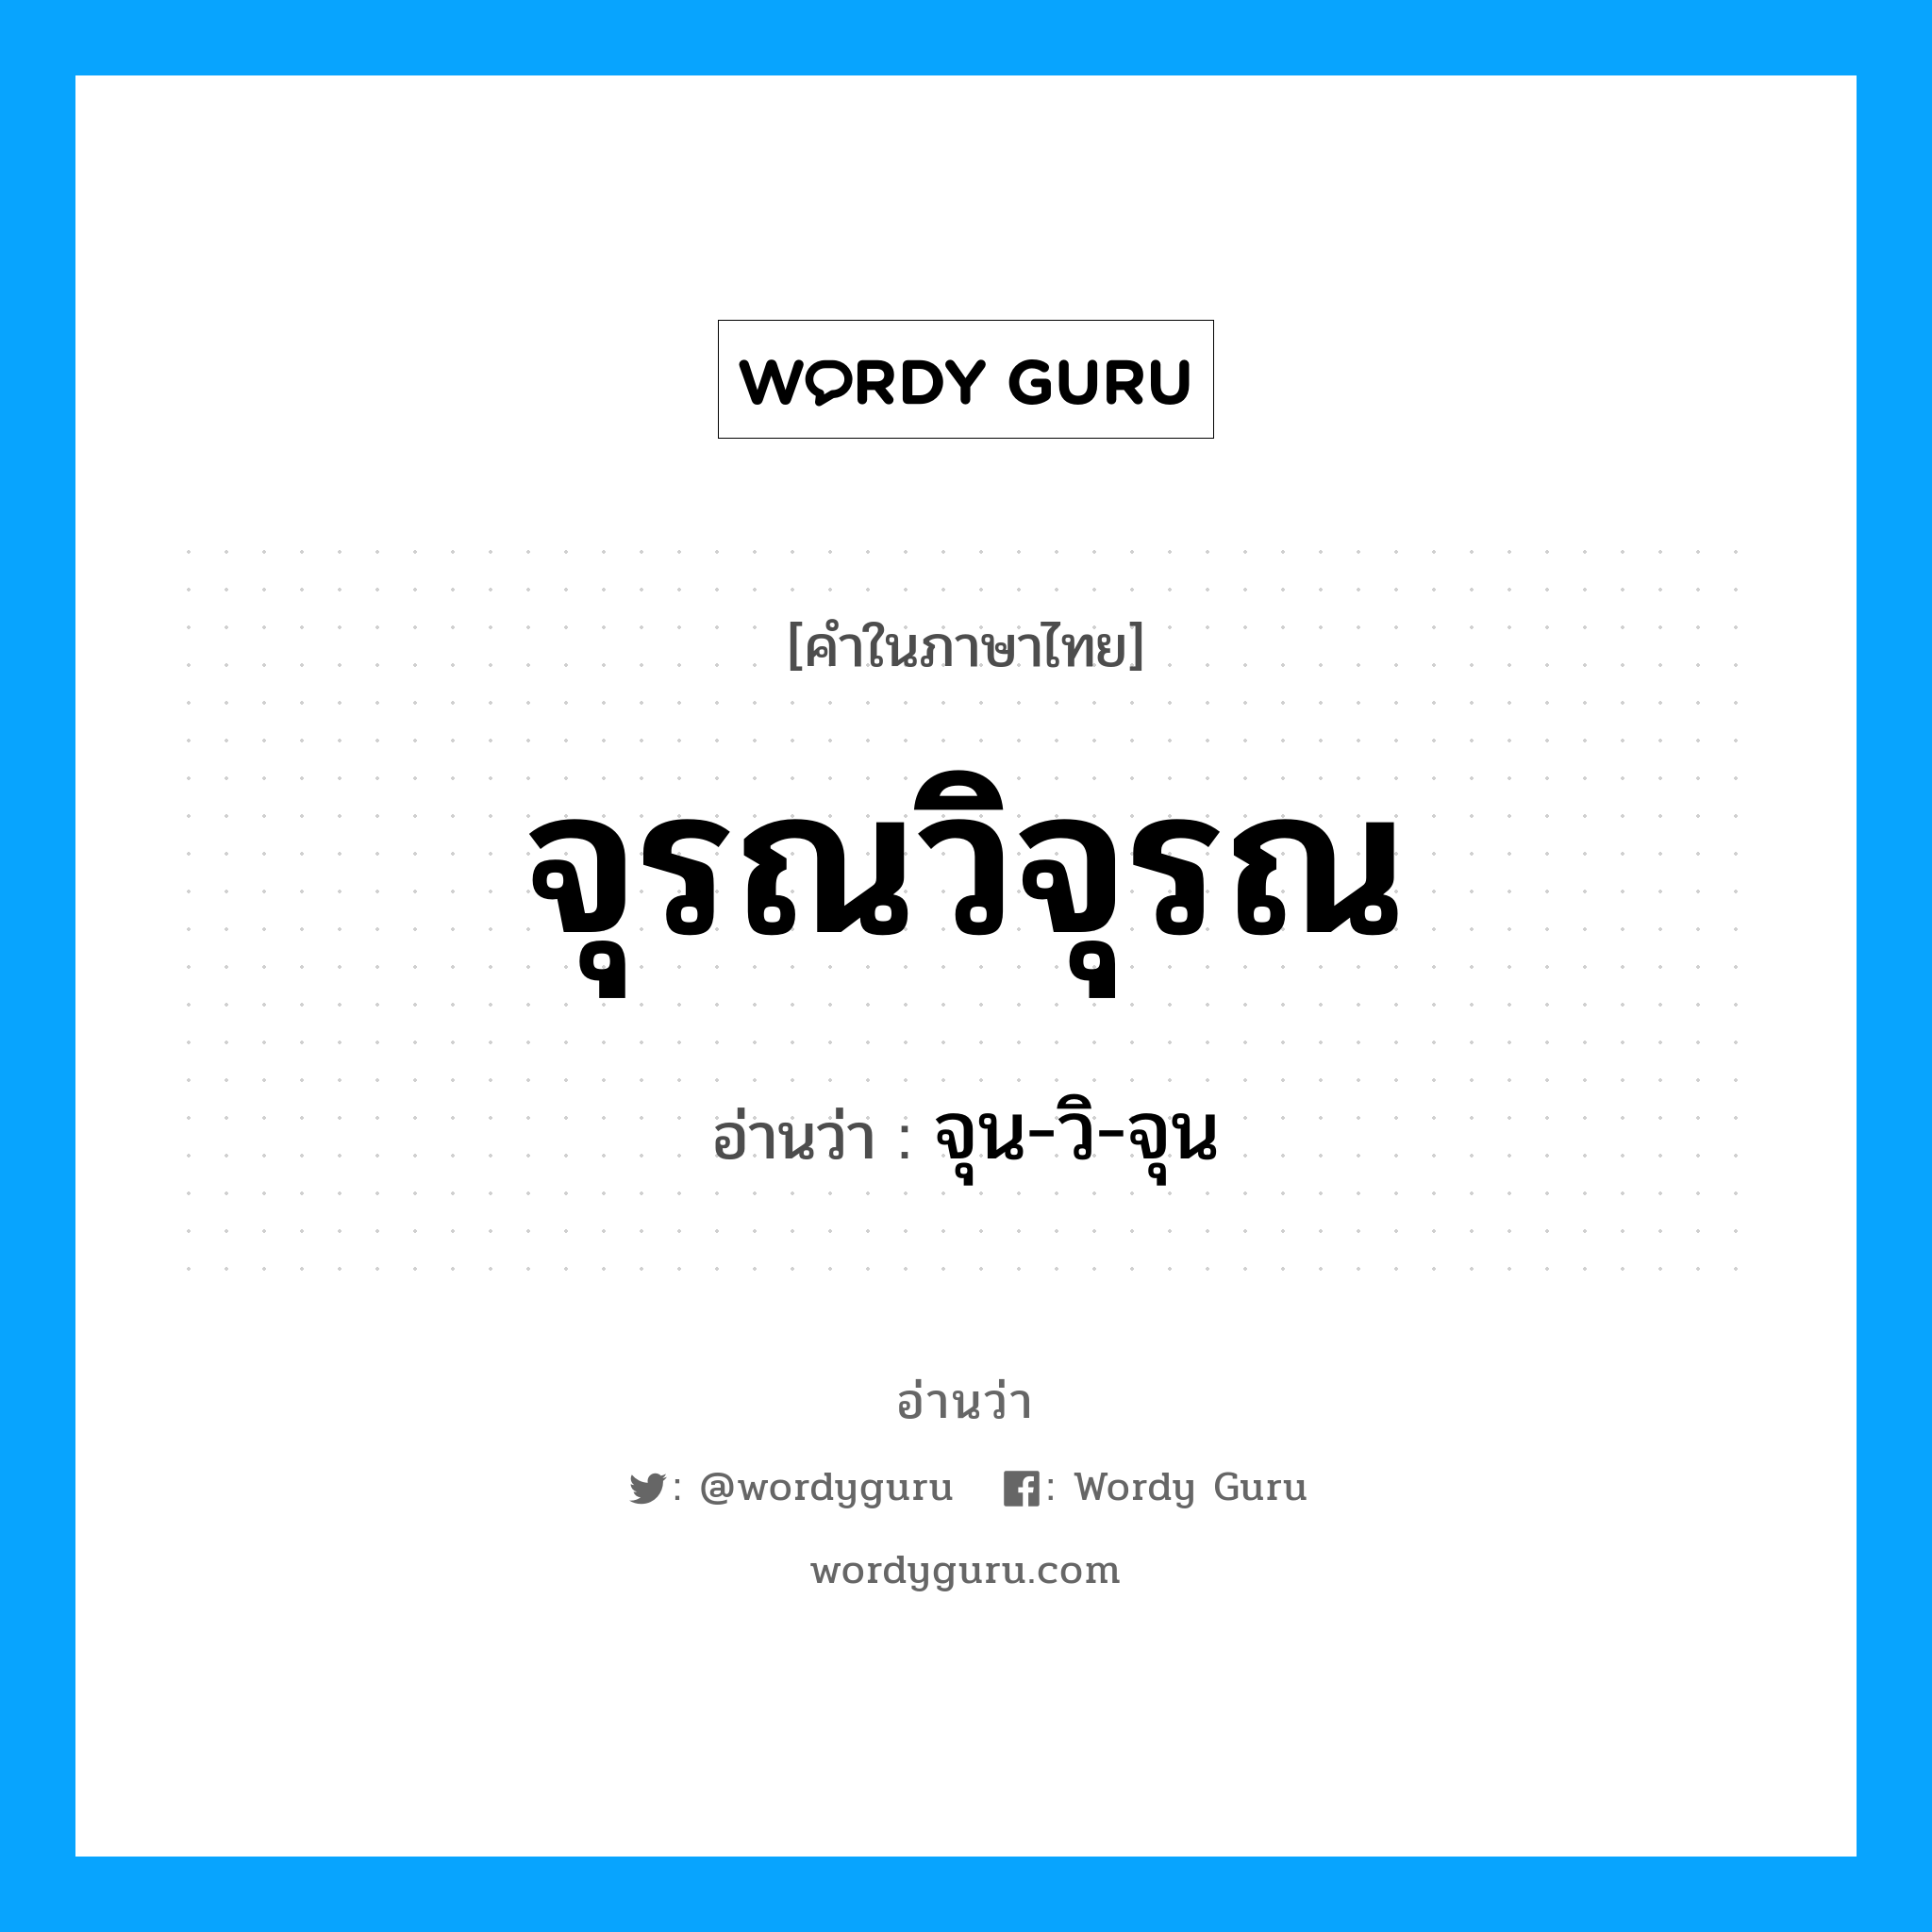 จุรณวิจุรณ อ่านว่า?, คำในภาษาไทย จุรณวิจุรณ อ่านว่า จุน-วิ-จุน